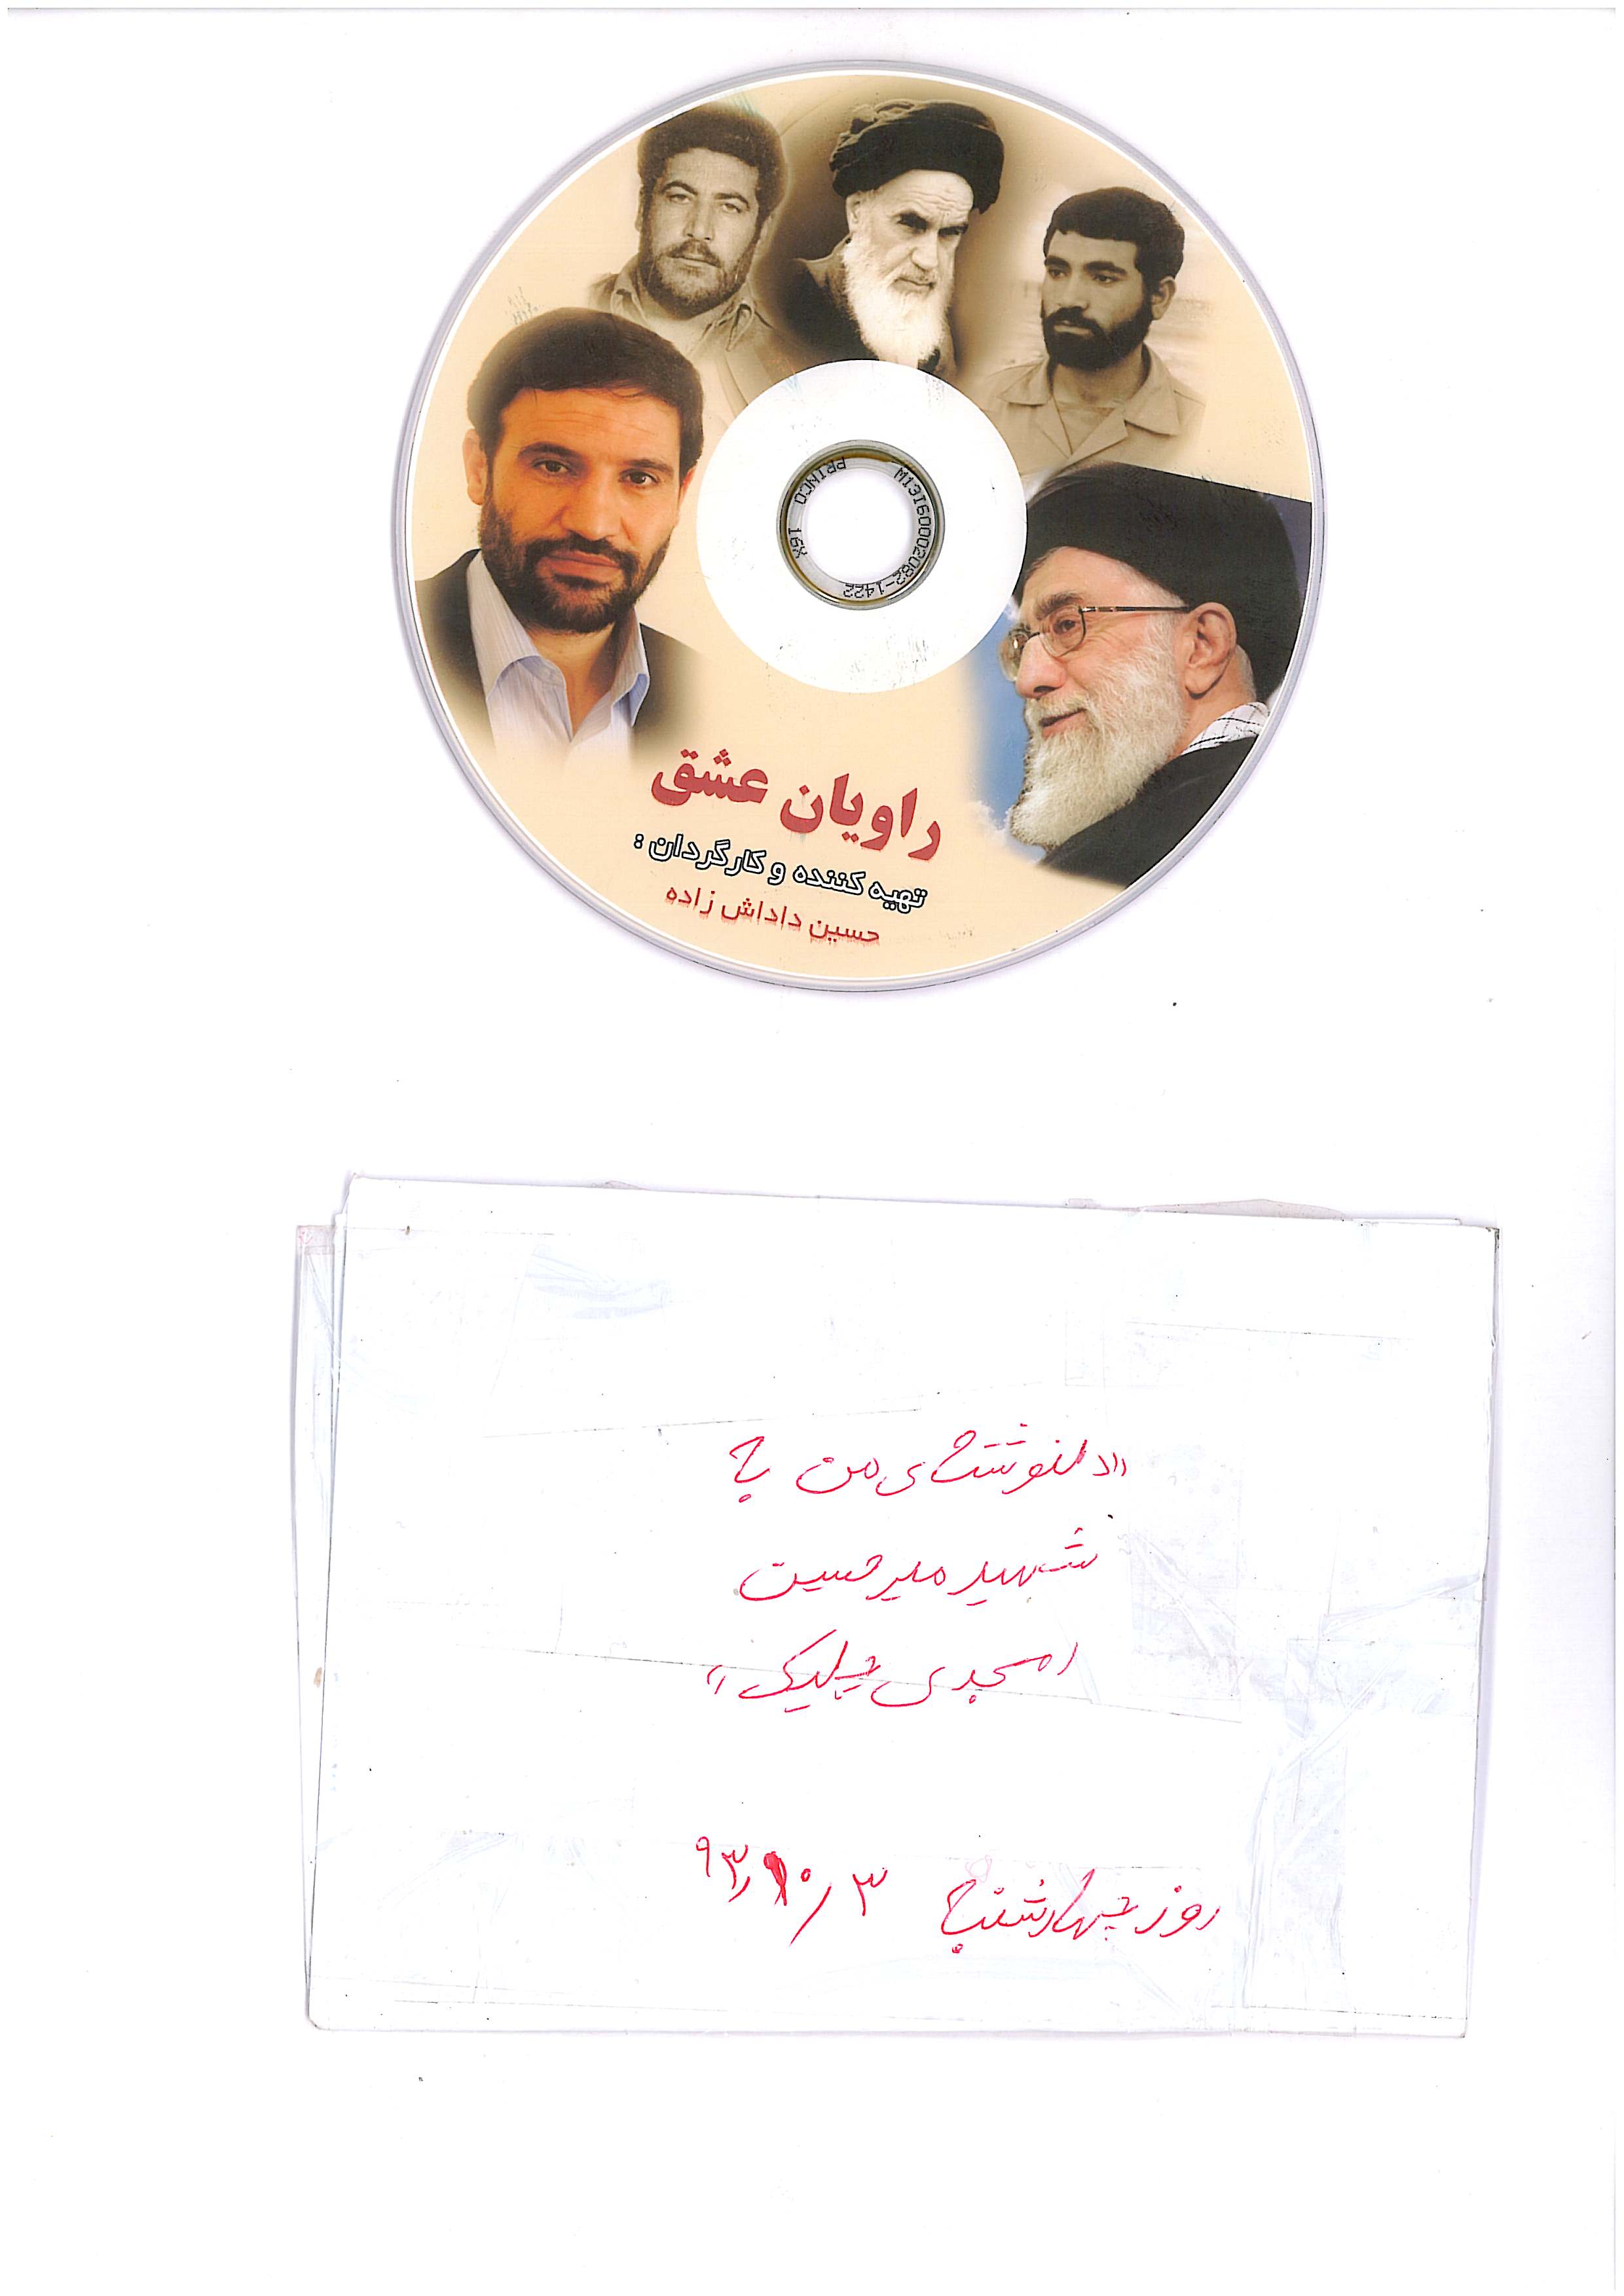 سی دی مصاحبه با حاج ضیا الله اعزازی و خانواده های محترم شهیدان محمد سبزی سید حسین امجدی